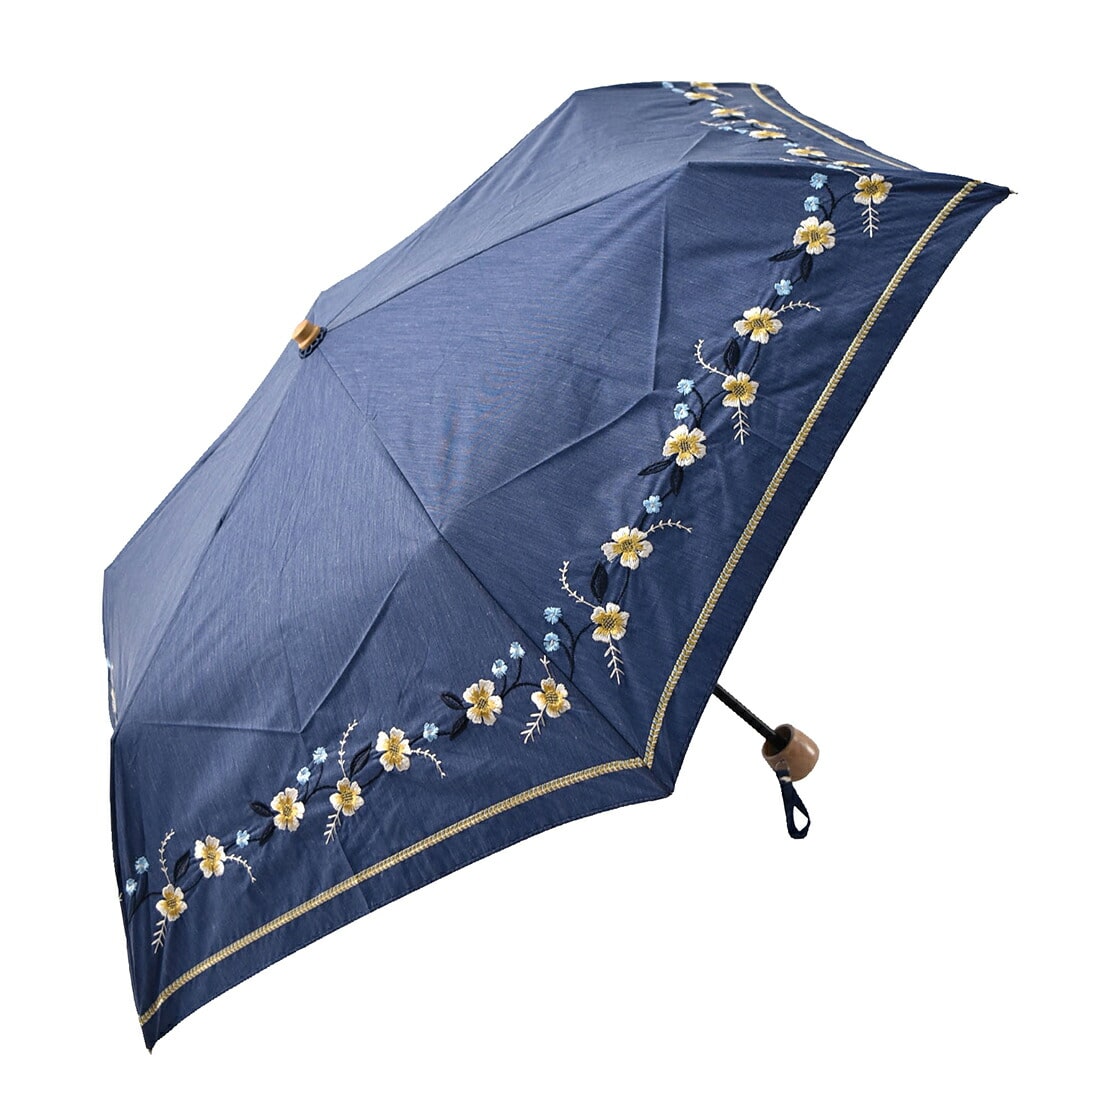 晴雨兼用 日傘 雨傘 折りたたみ傘 because ボーホーフラワー刺繍 ミニ 